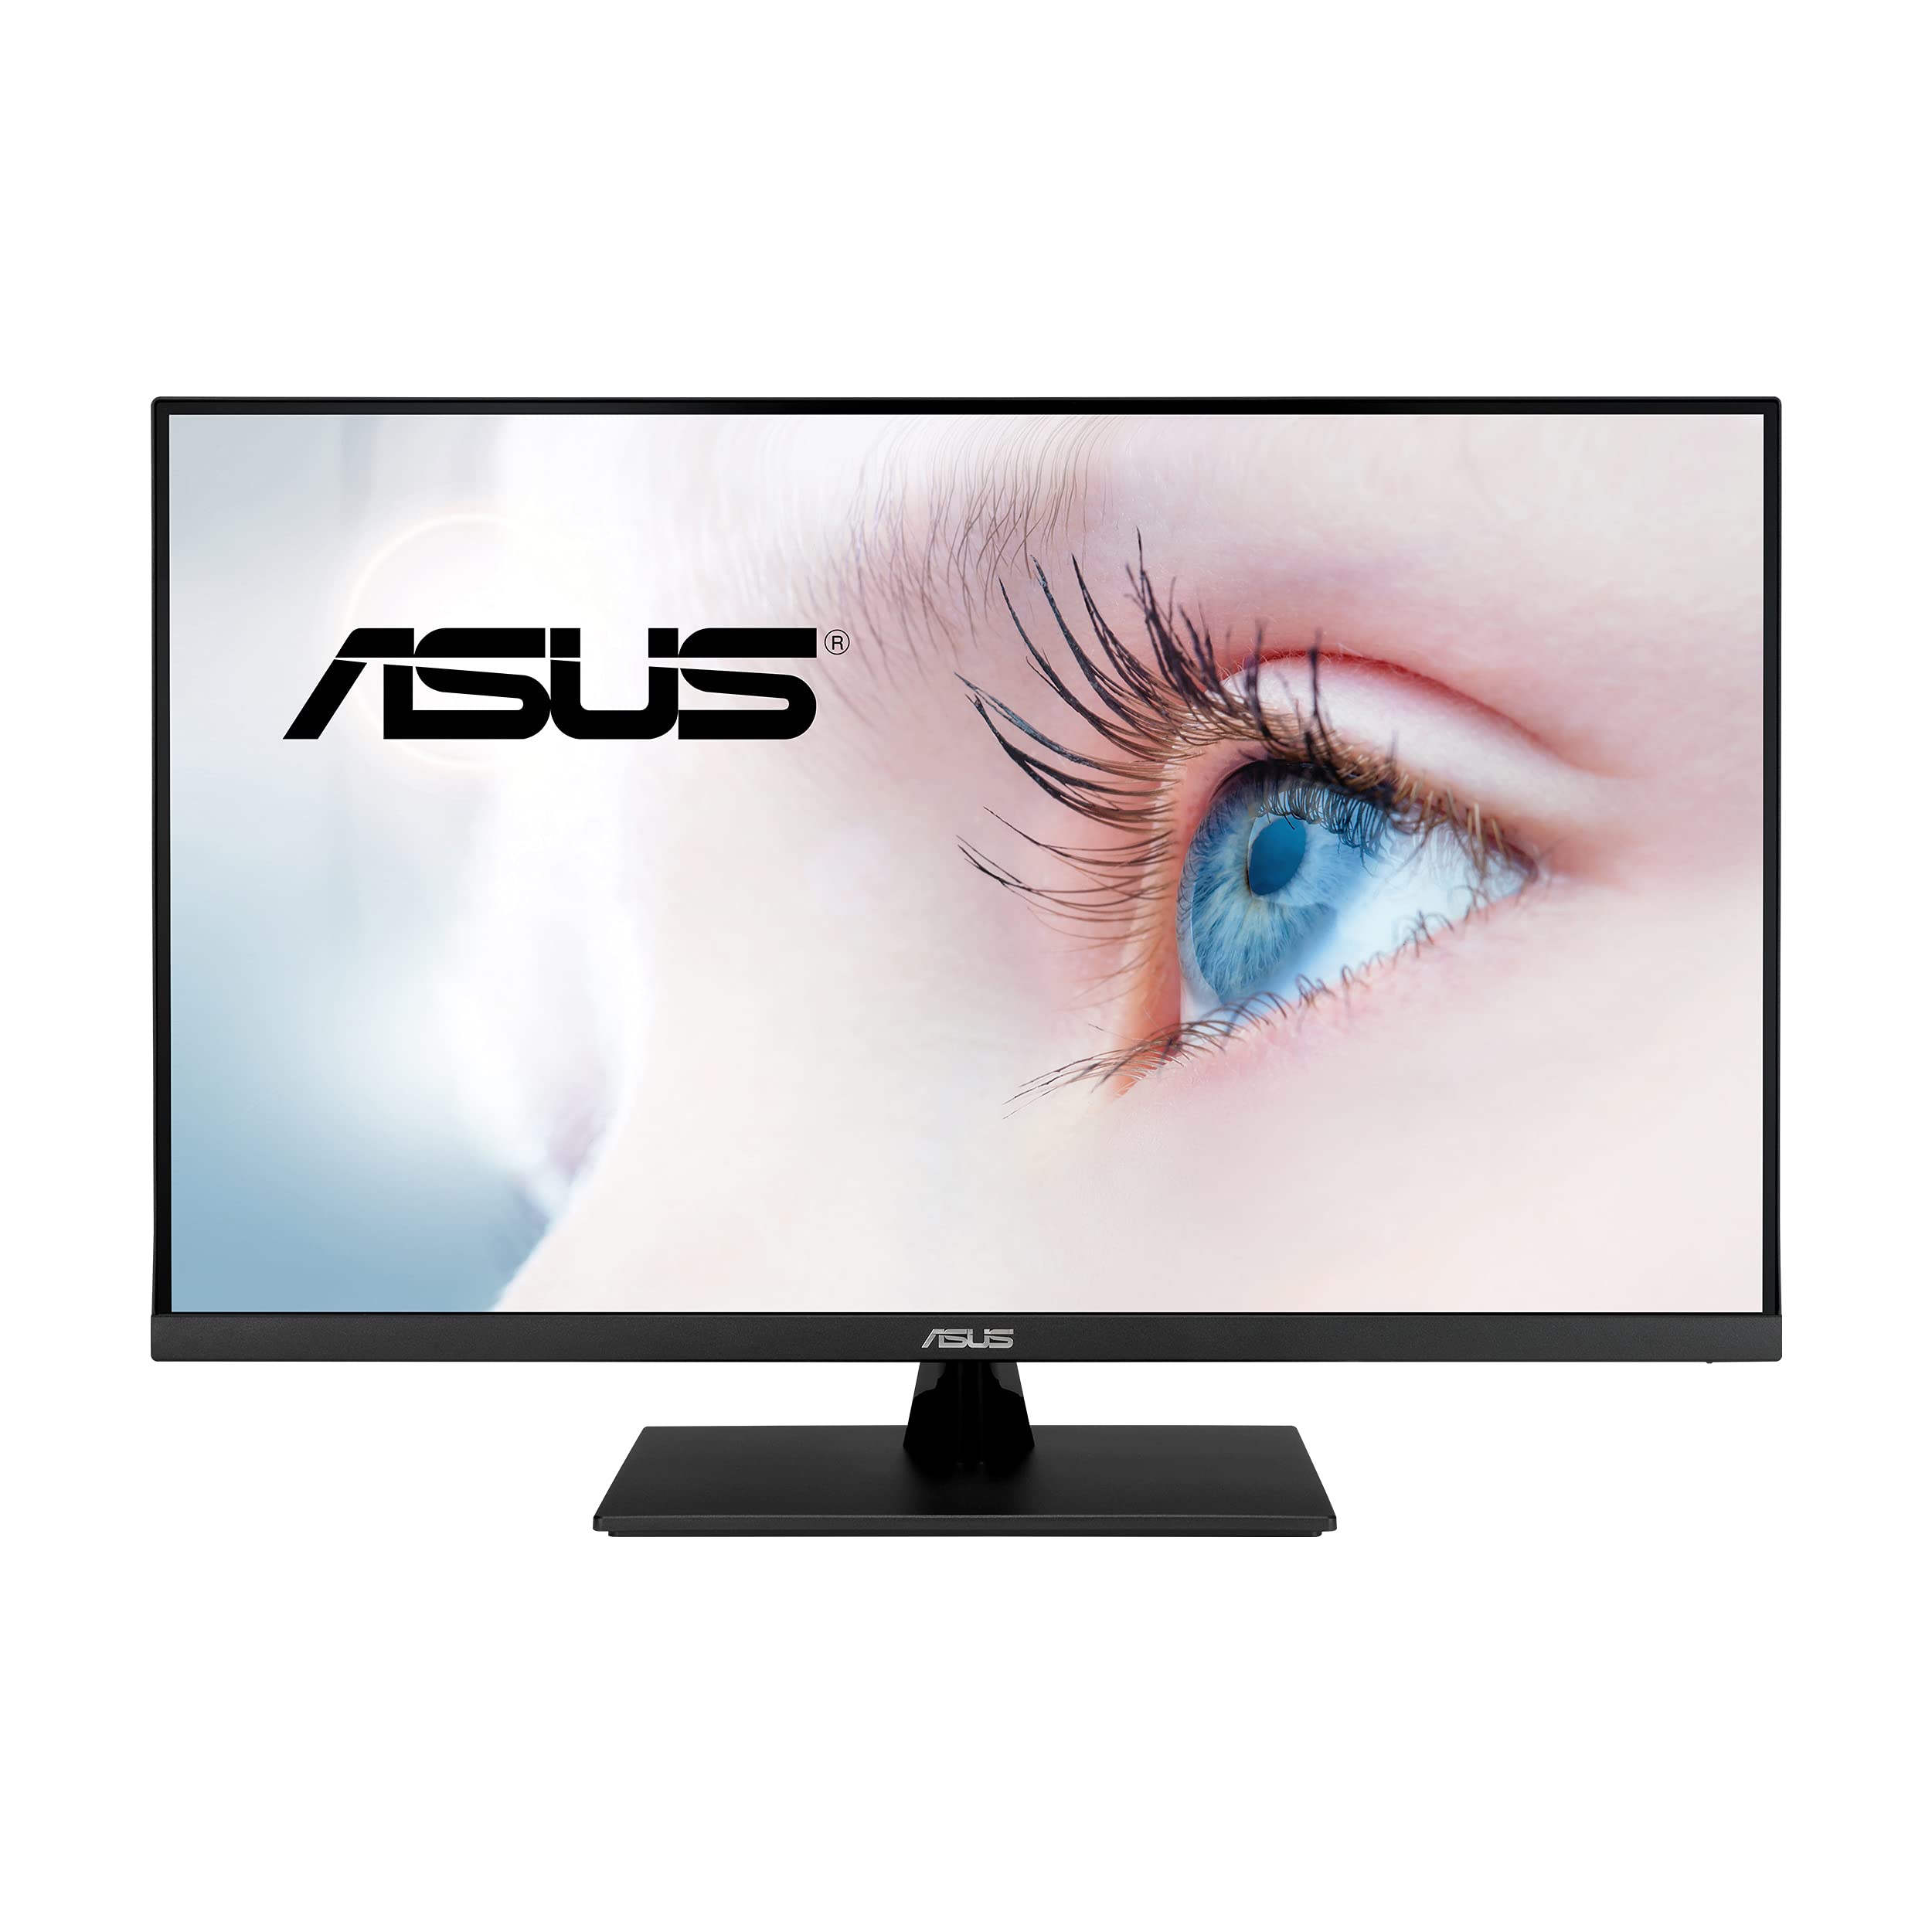 ASUS 31.5” 4K HDR IPS Monitor (VP32UQ) $269 at Newegg/B&H Photo/Adorama